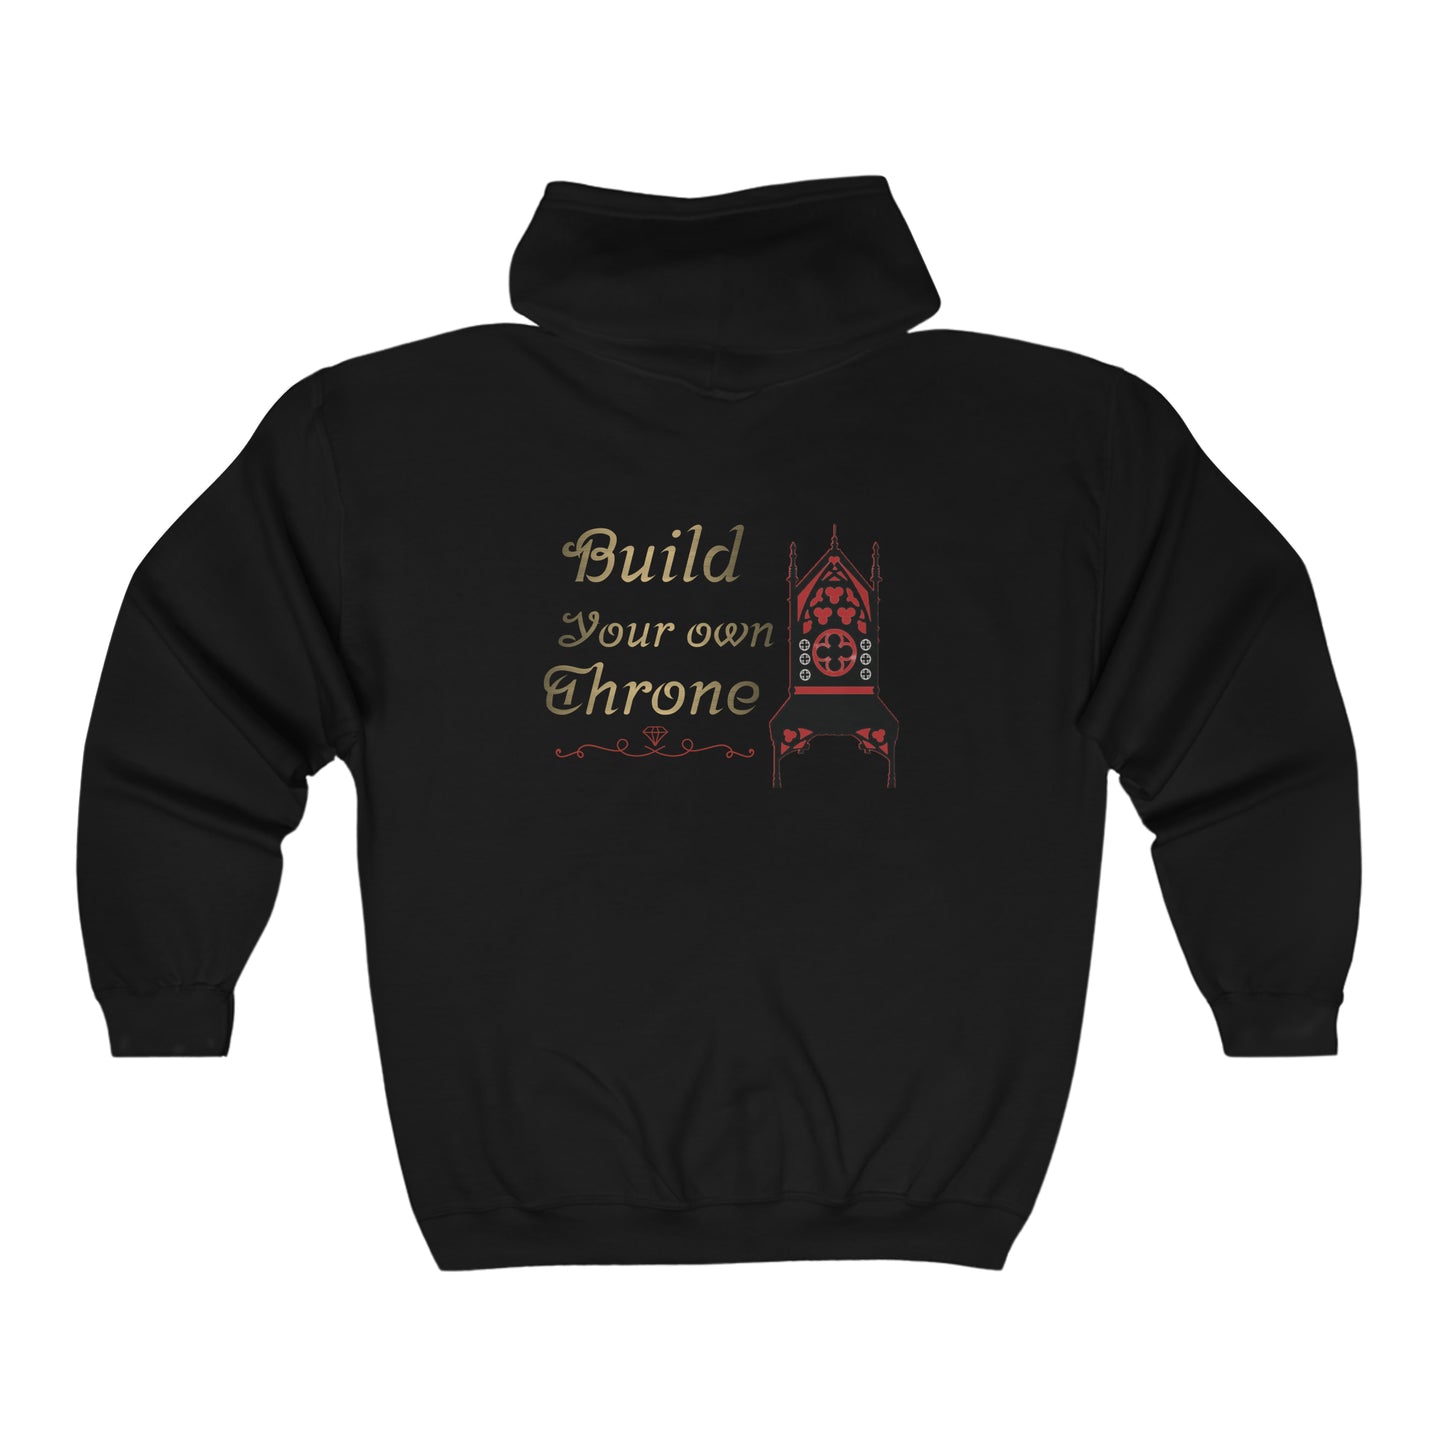 Build your throne Full Zip Hooded Sweatshirt